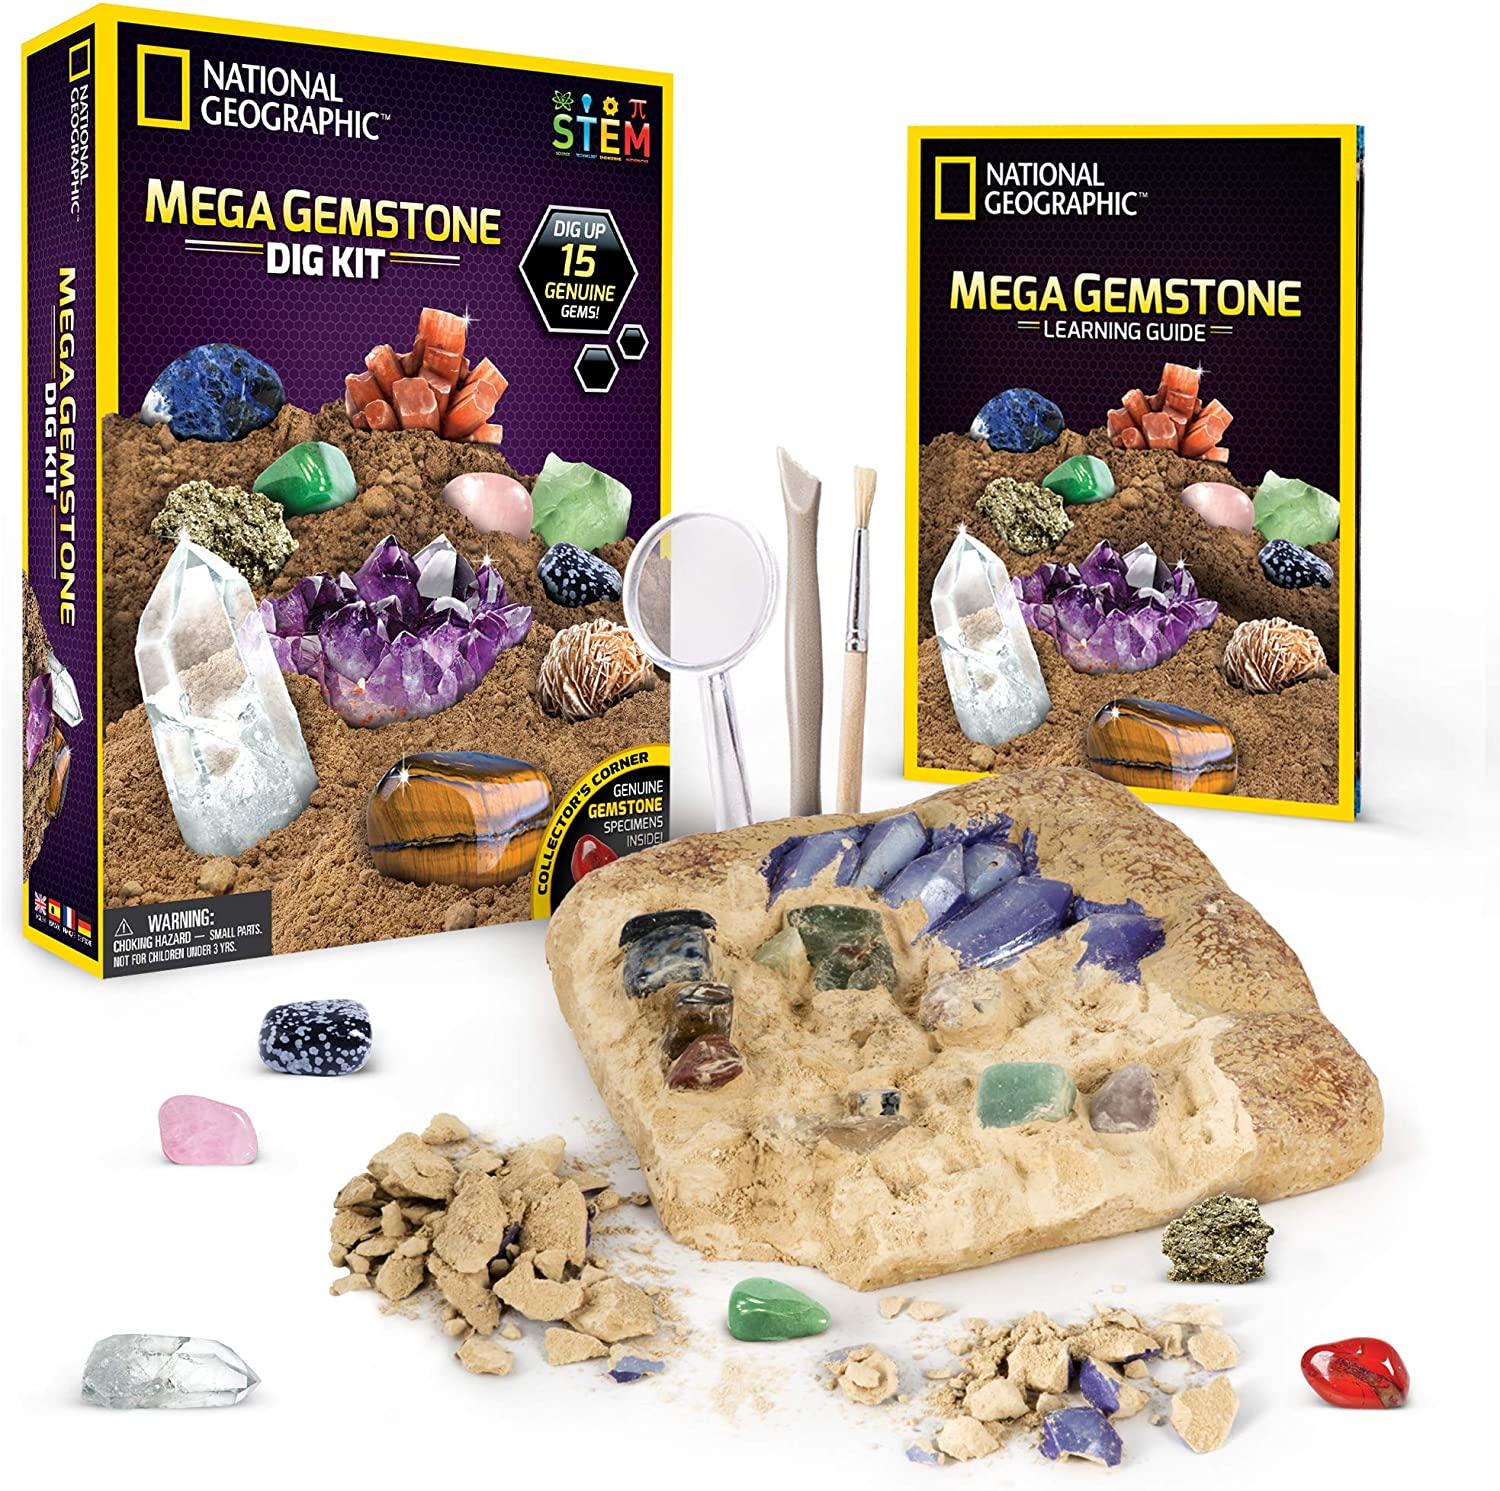 National Geographic Mega Gemstone Dig Kit for $15.99